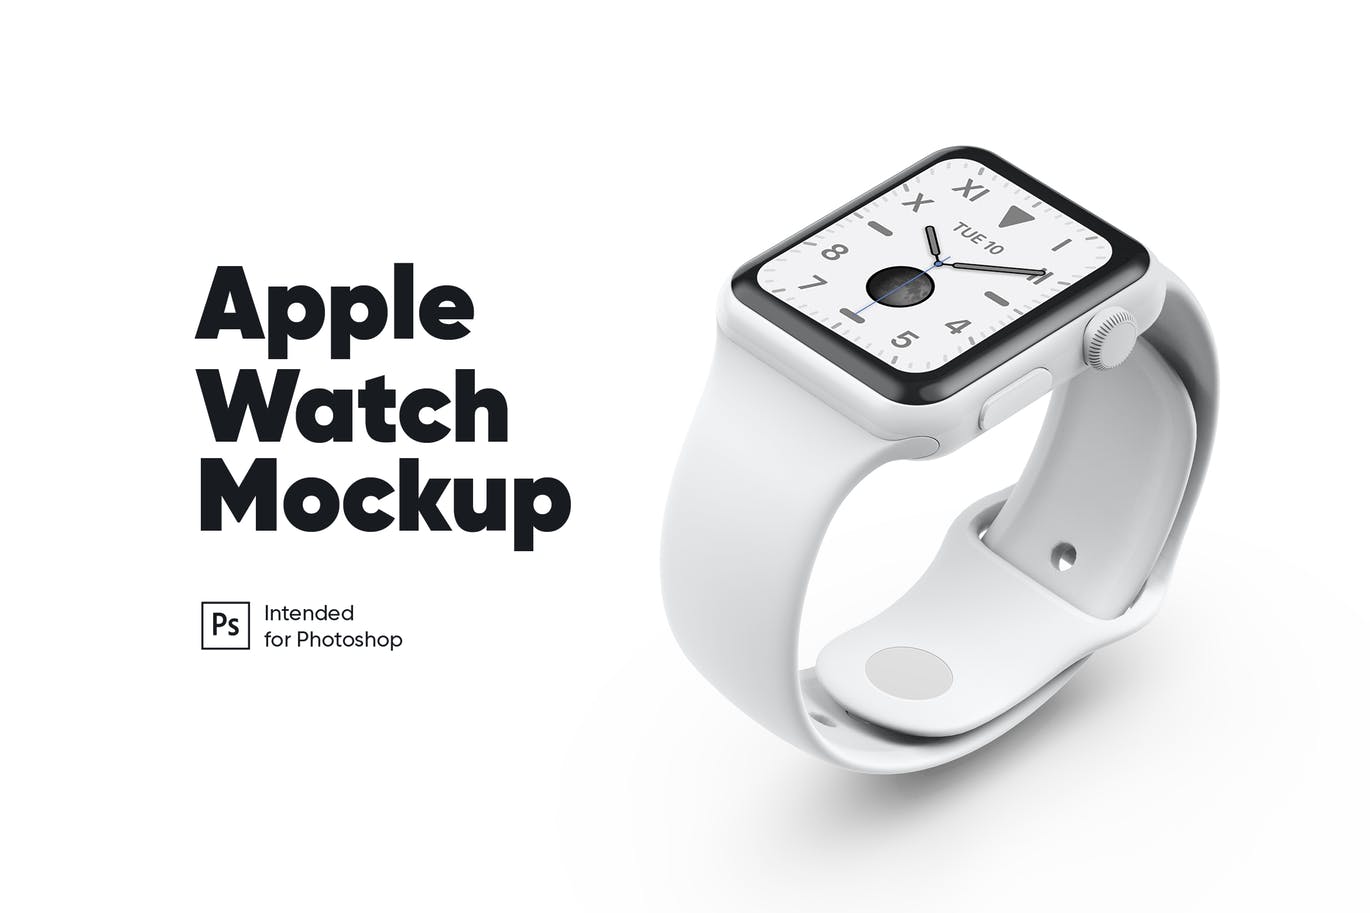 白色陶瓷材质Apple Watch智能手表非凡图库精选样机模板 Apple Watch White Ceramic Mockup插图